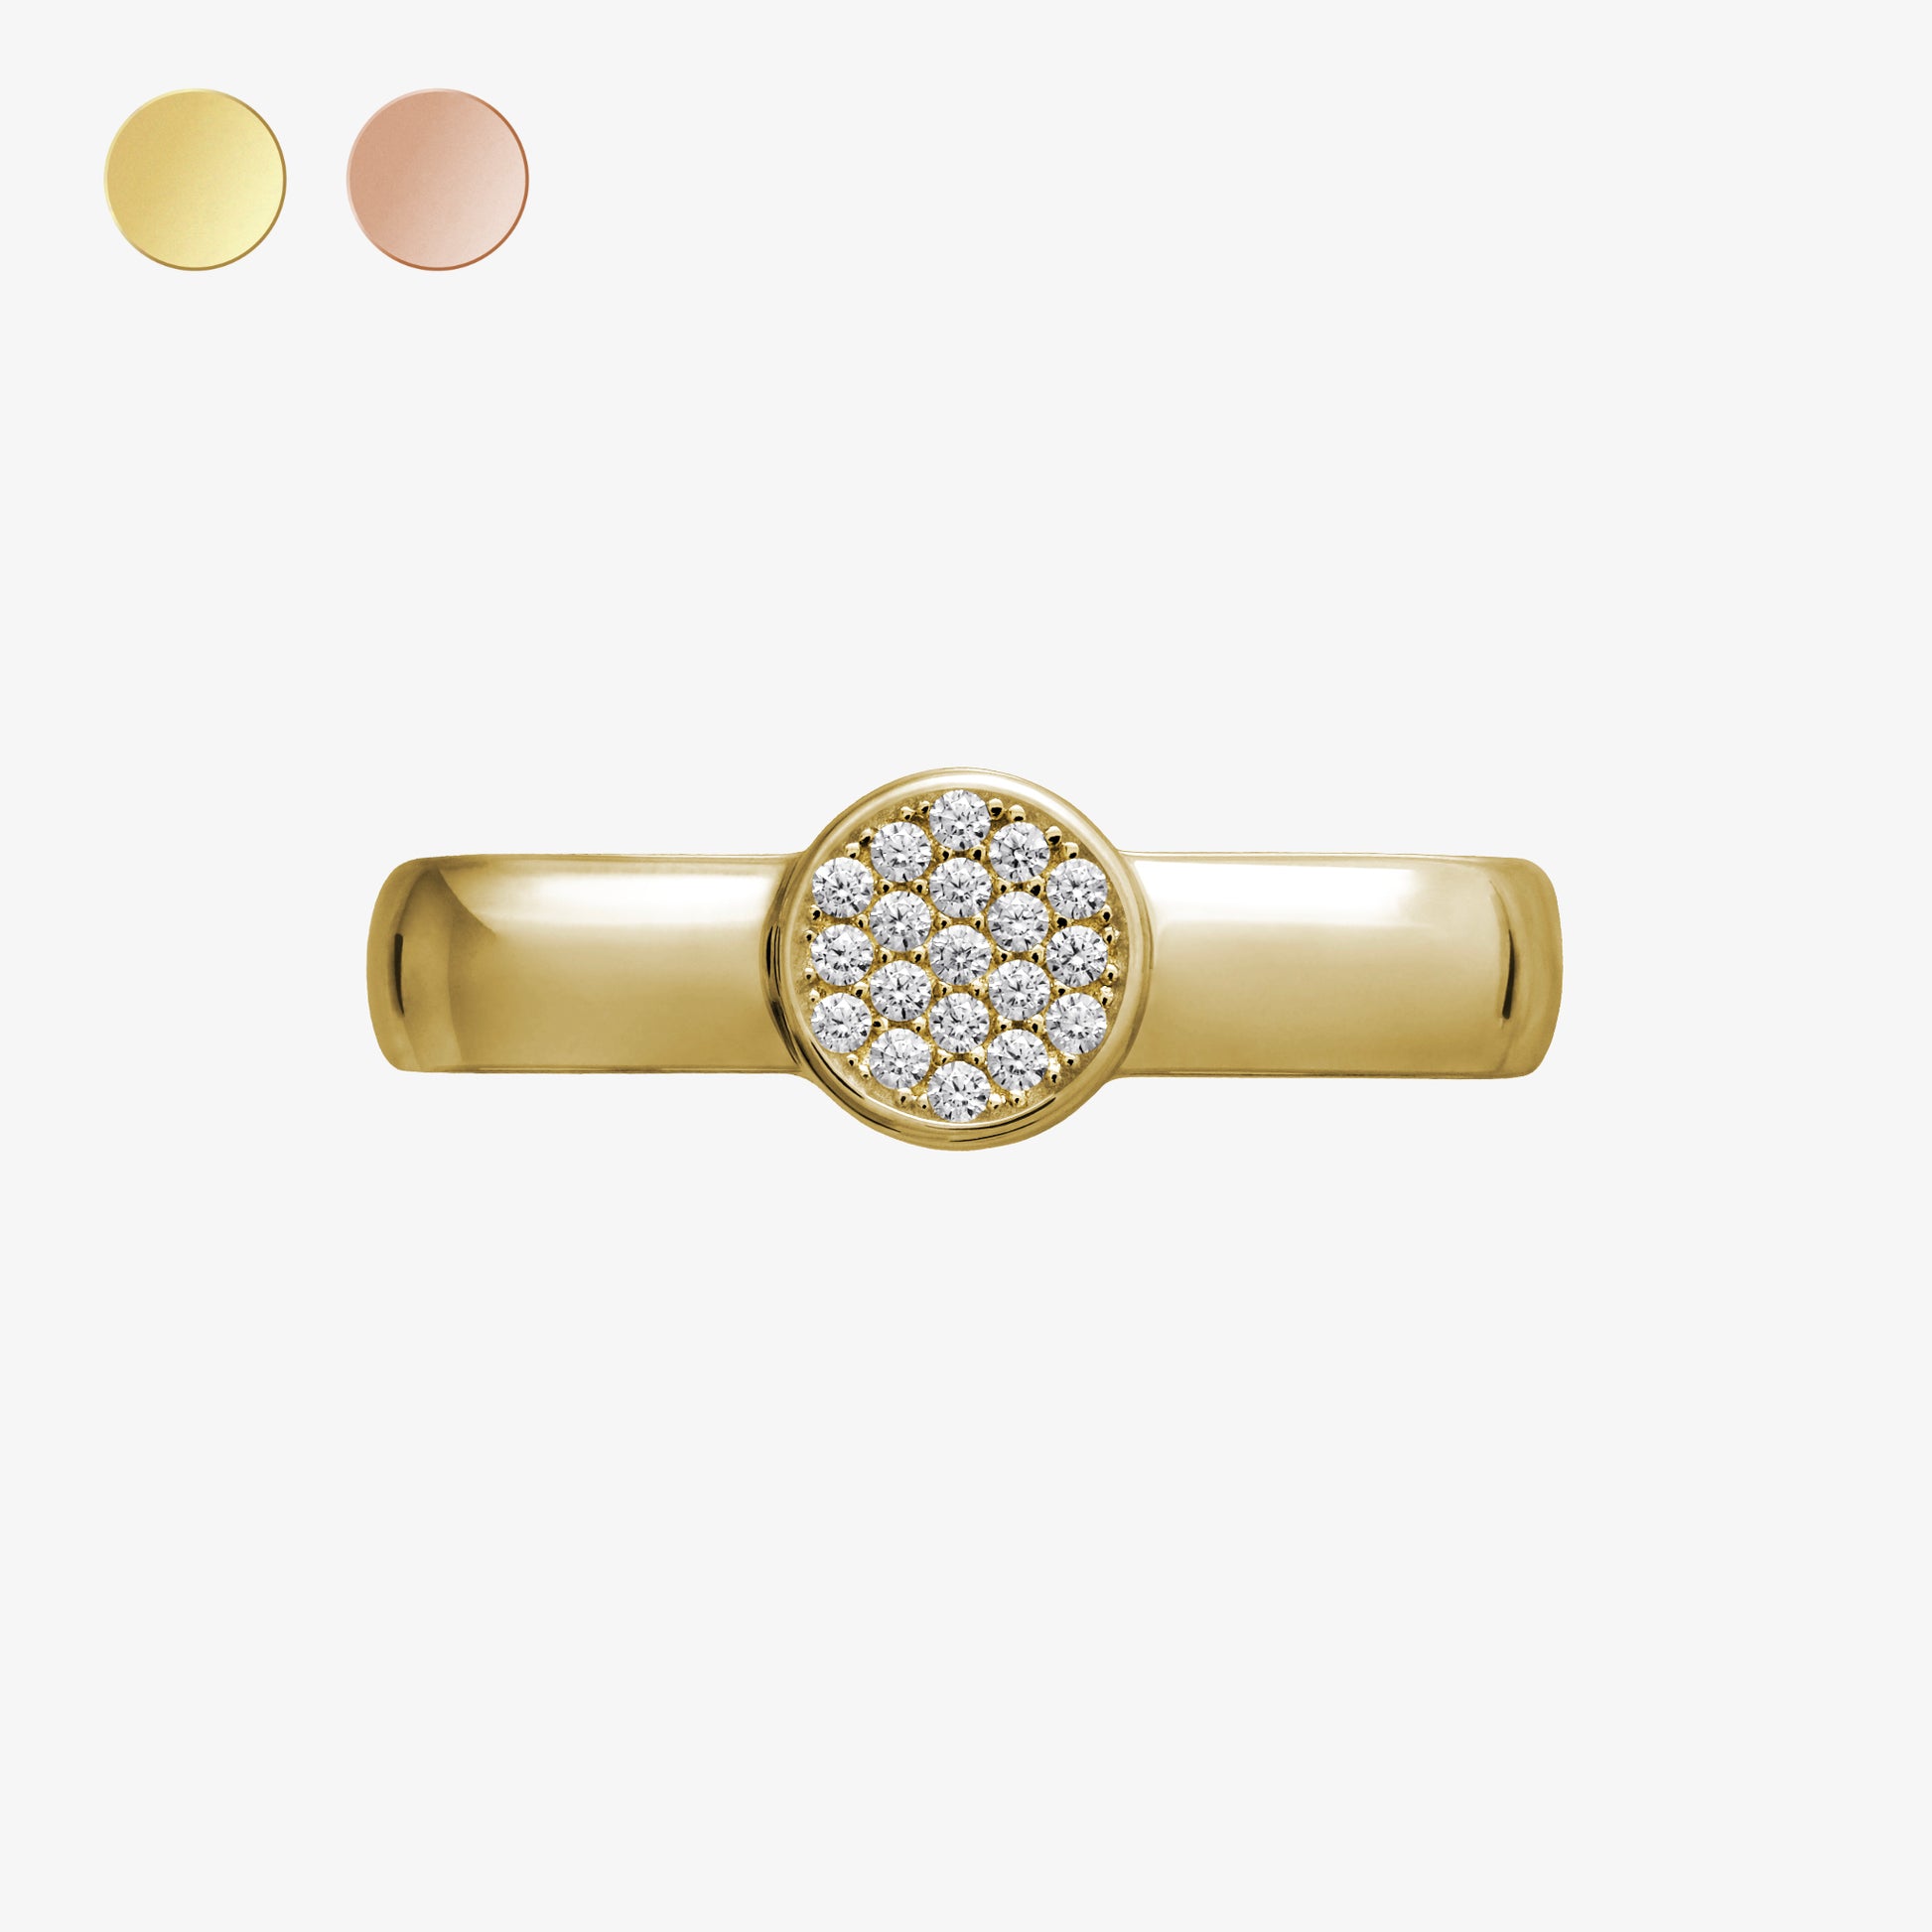  Pamoro® Loop für Apple Watch Sportbänder -  Schmuck Charm in Silber 24k Gold plattiert und 19 weißen Cubic Zirkonia